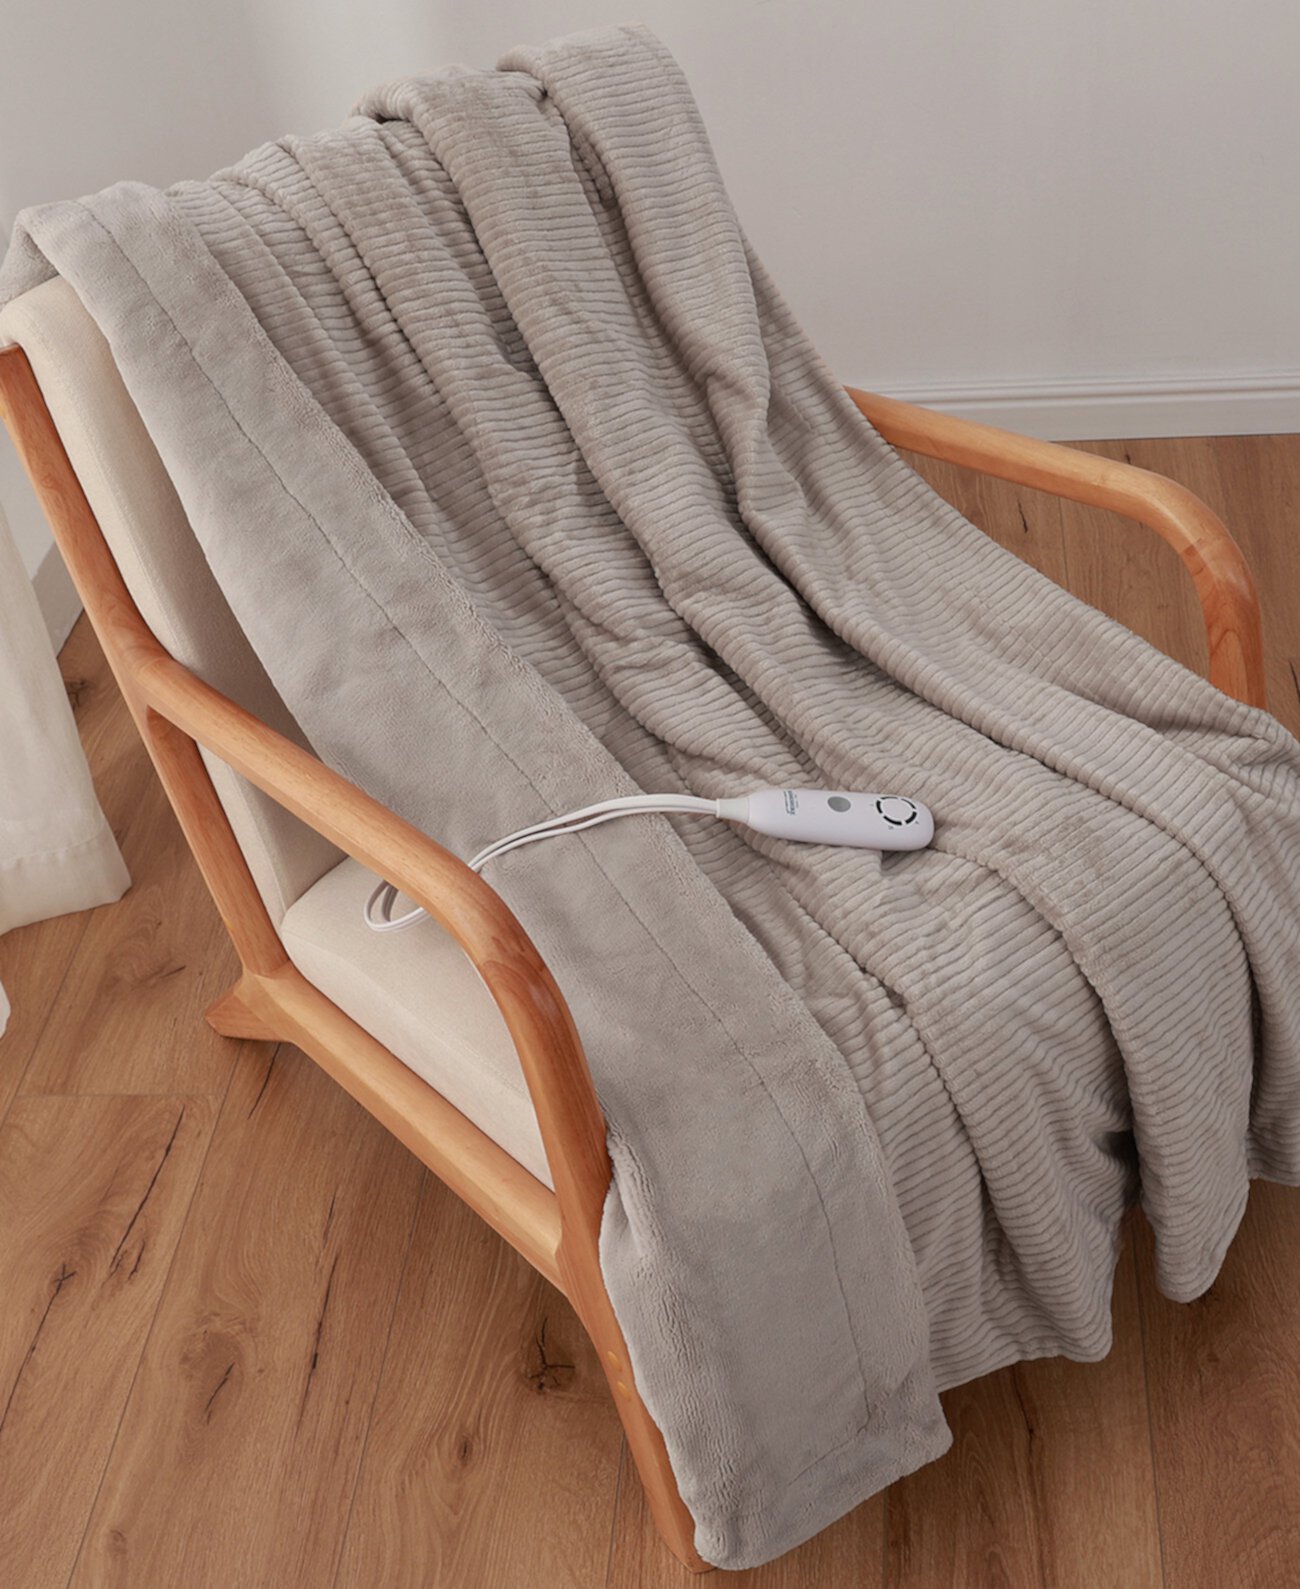 Электрическое одеяло с вельветовой полосатой текстурой, Плед Berkshire